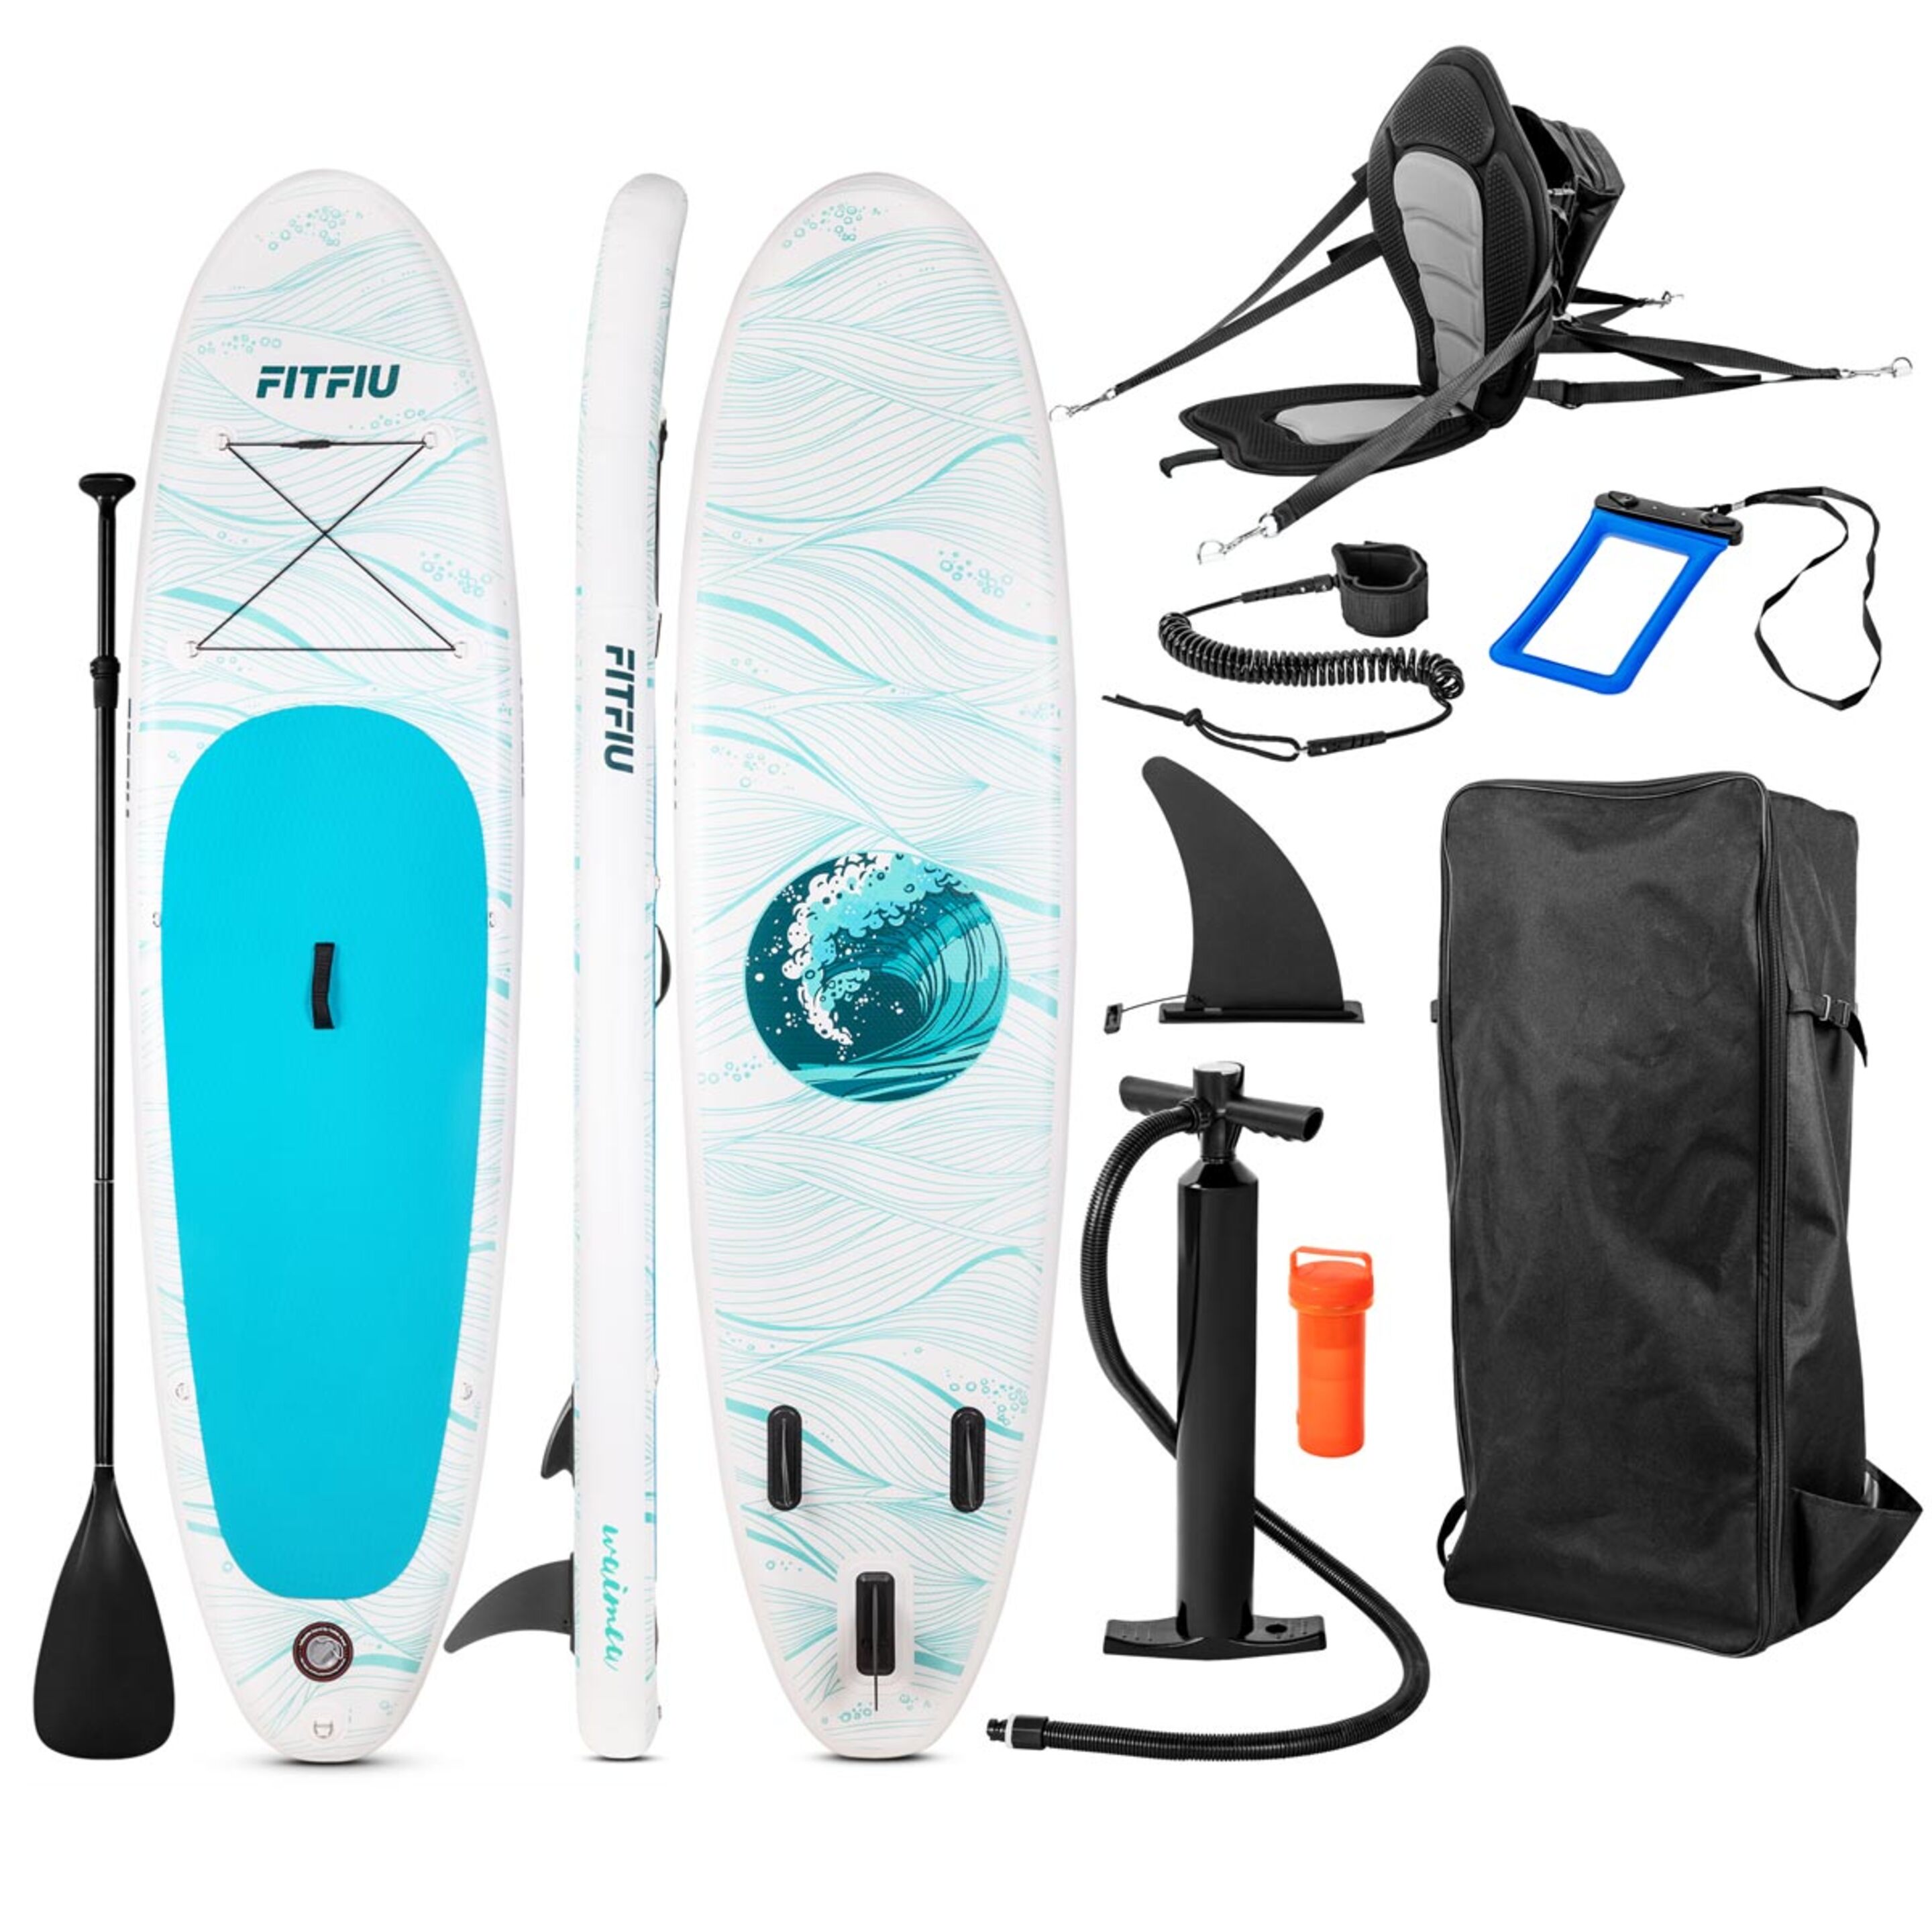 Tabla Paddle Surf All Round Hinchable Fitfiu Con Accesorios Y Diseño Marino - azul-marino - 